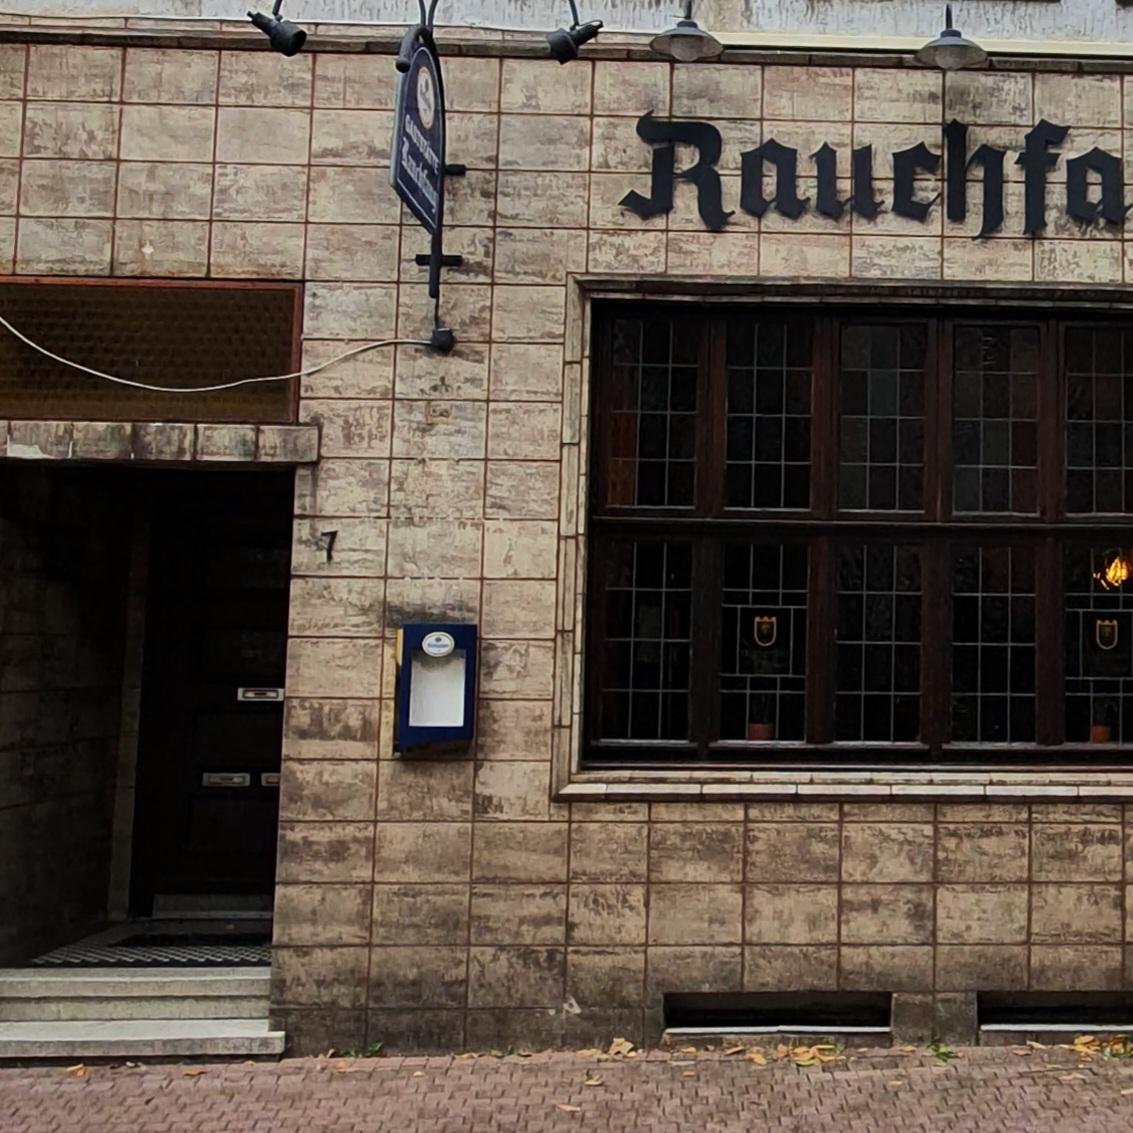 Restaurant "Rauchfang" in Bad Salzuflen